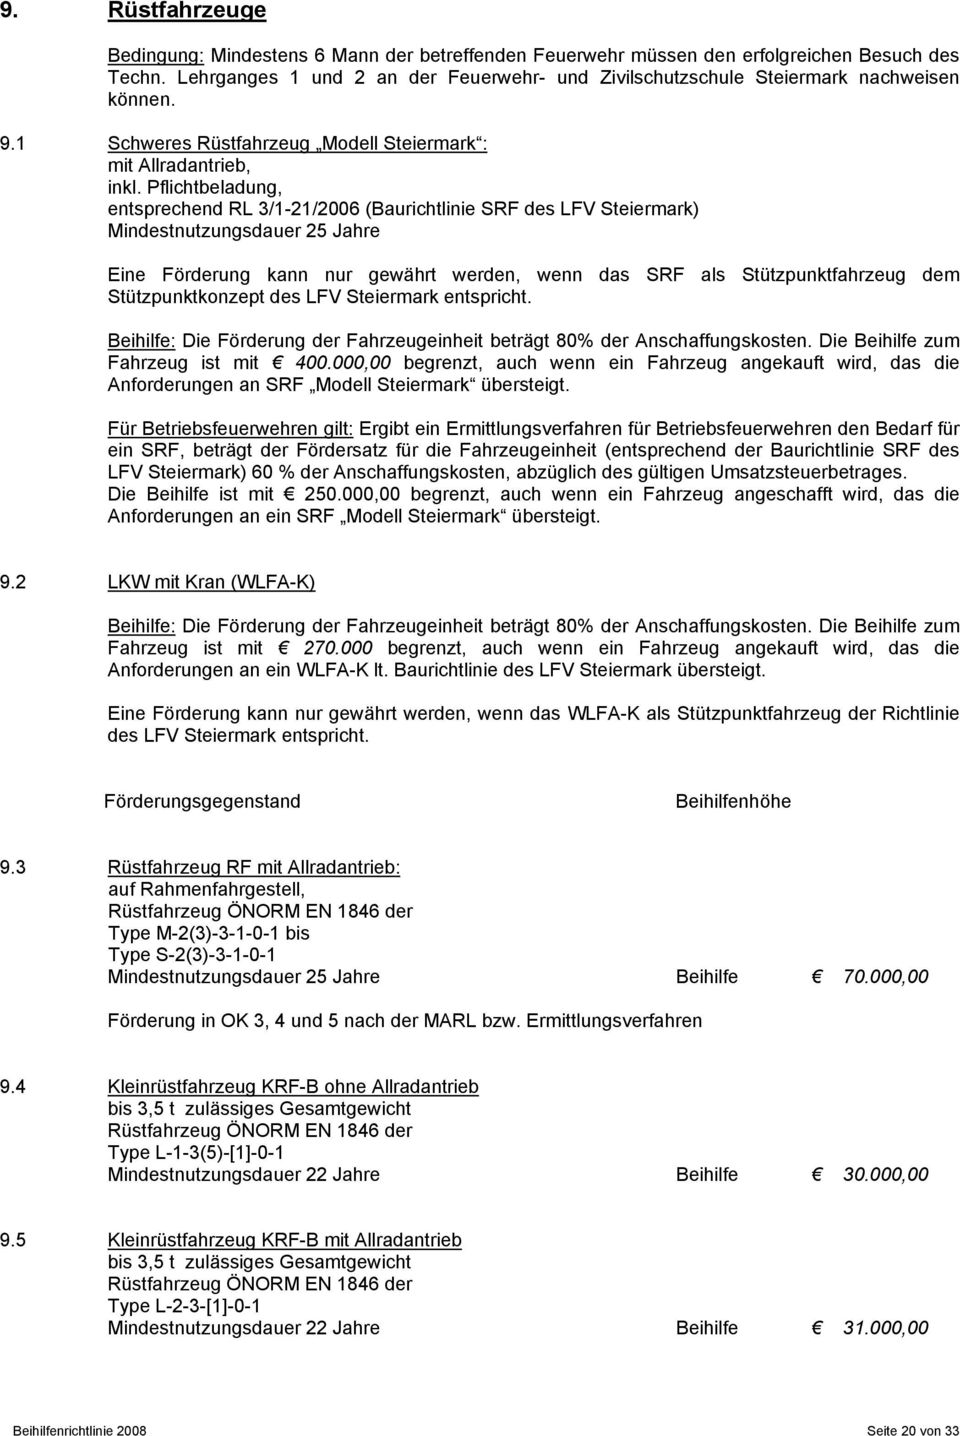 Pflichtbeladung, entsprechend RL 3/1-21/2006 (Baurichtlinie SRF des LFV Steiermark) Mindestnutzungsdauer 25 Jahre Eine Förderung kann nur gewährt werden, wenn das SRF als Stützpunktfahrzeug dem